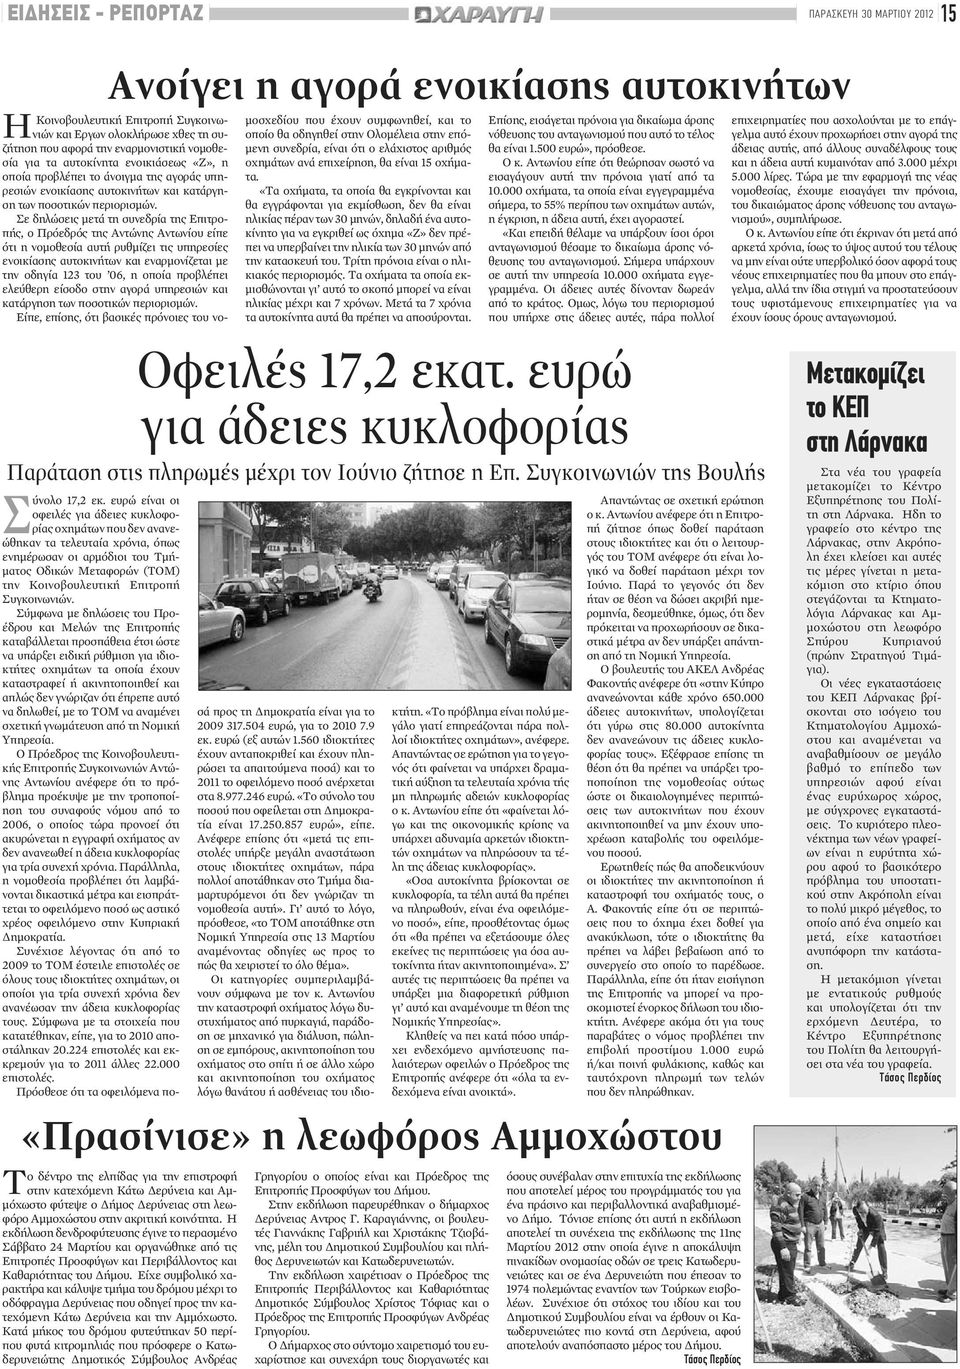 Σε δηλώσεις μετά τη συνεδρία της Επιτροπής, ο Πρόεδρός της Αντώνης Αντωνίου είπε ότι η νομοθεσία αυτή ρυθμίζει τις υπηρεσίες ενοικίασης αυτοκινήτων και εναρμονίζεται με την οδηγία 123 του 06, η οποία